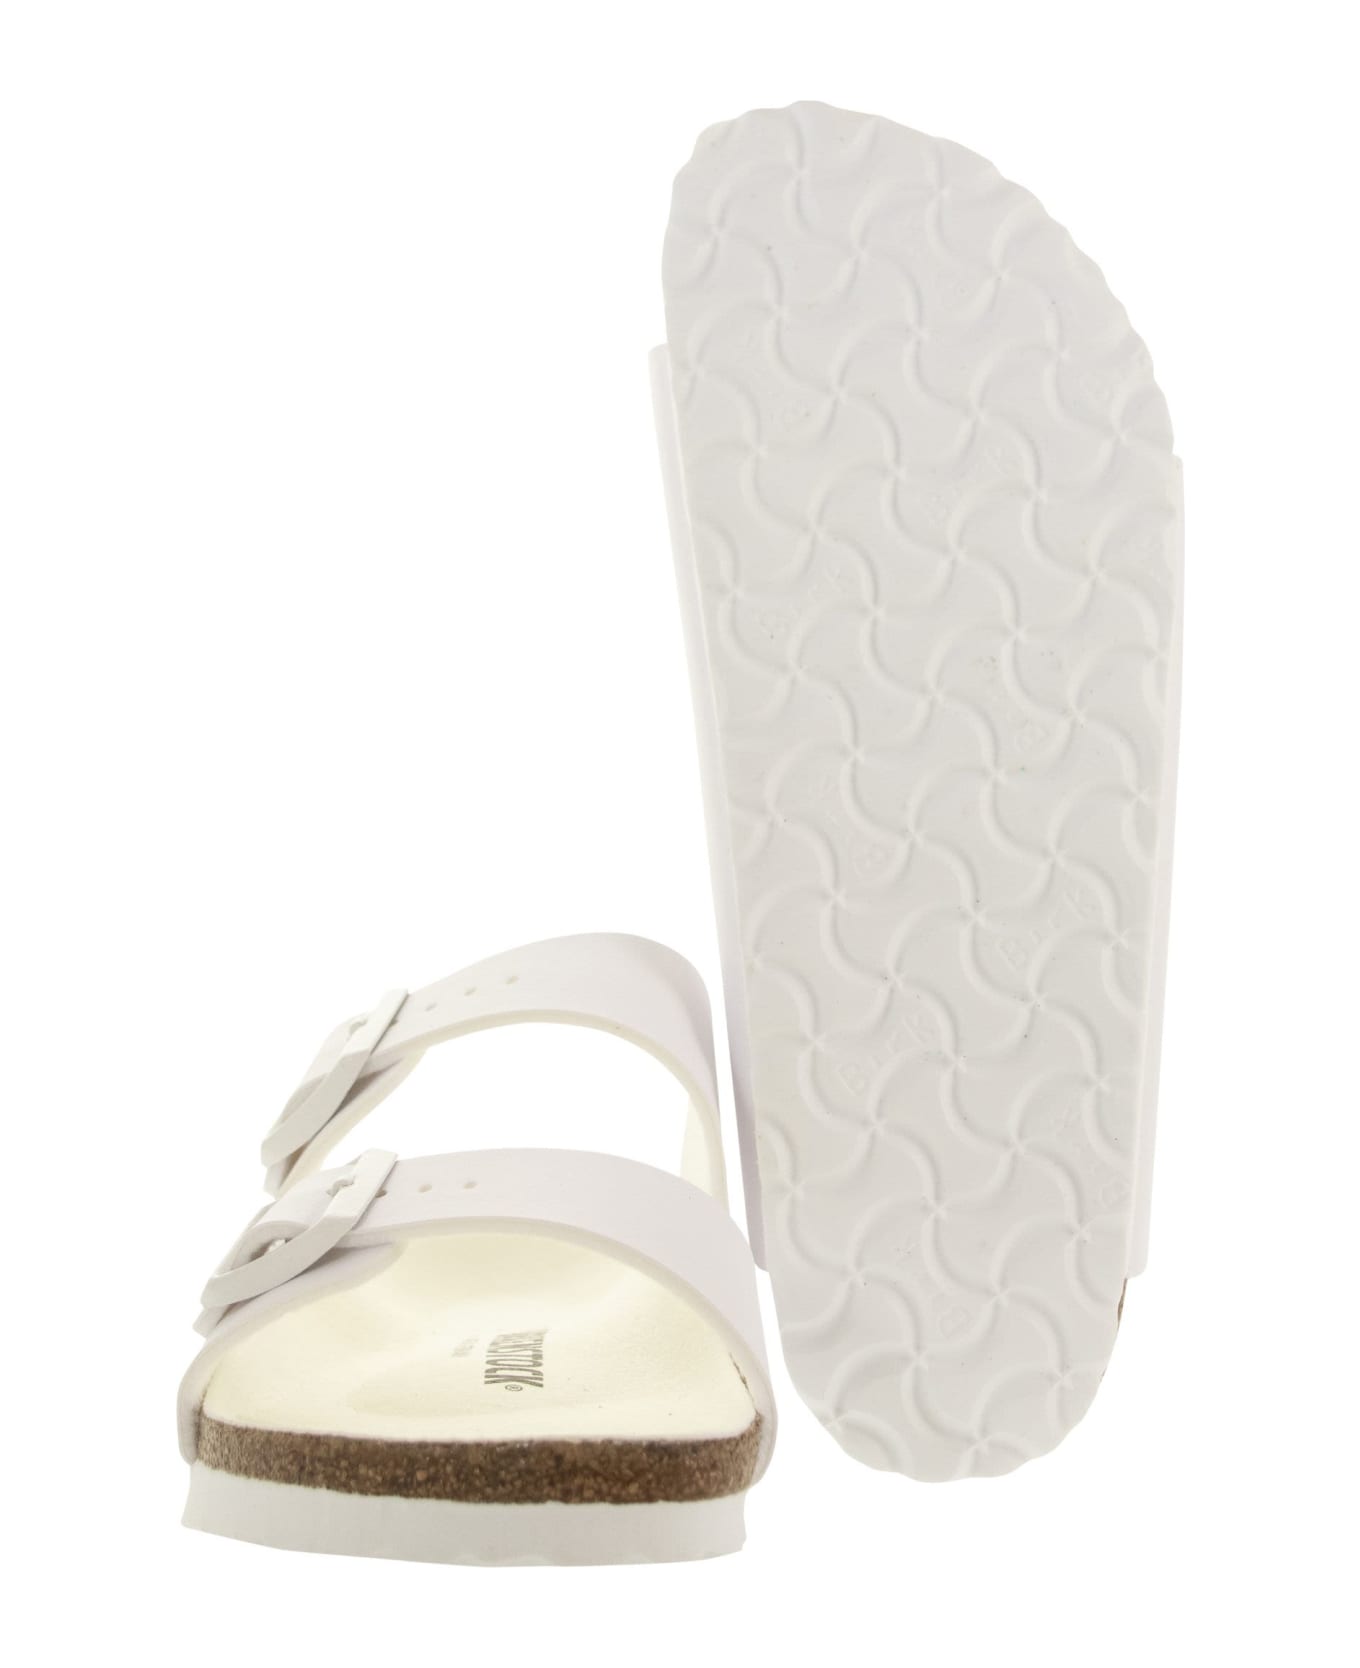 Birkenstock Arizona - Slipper Sandal - White サンダル